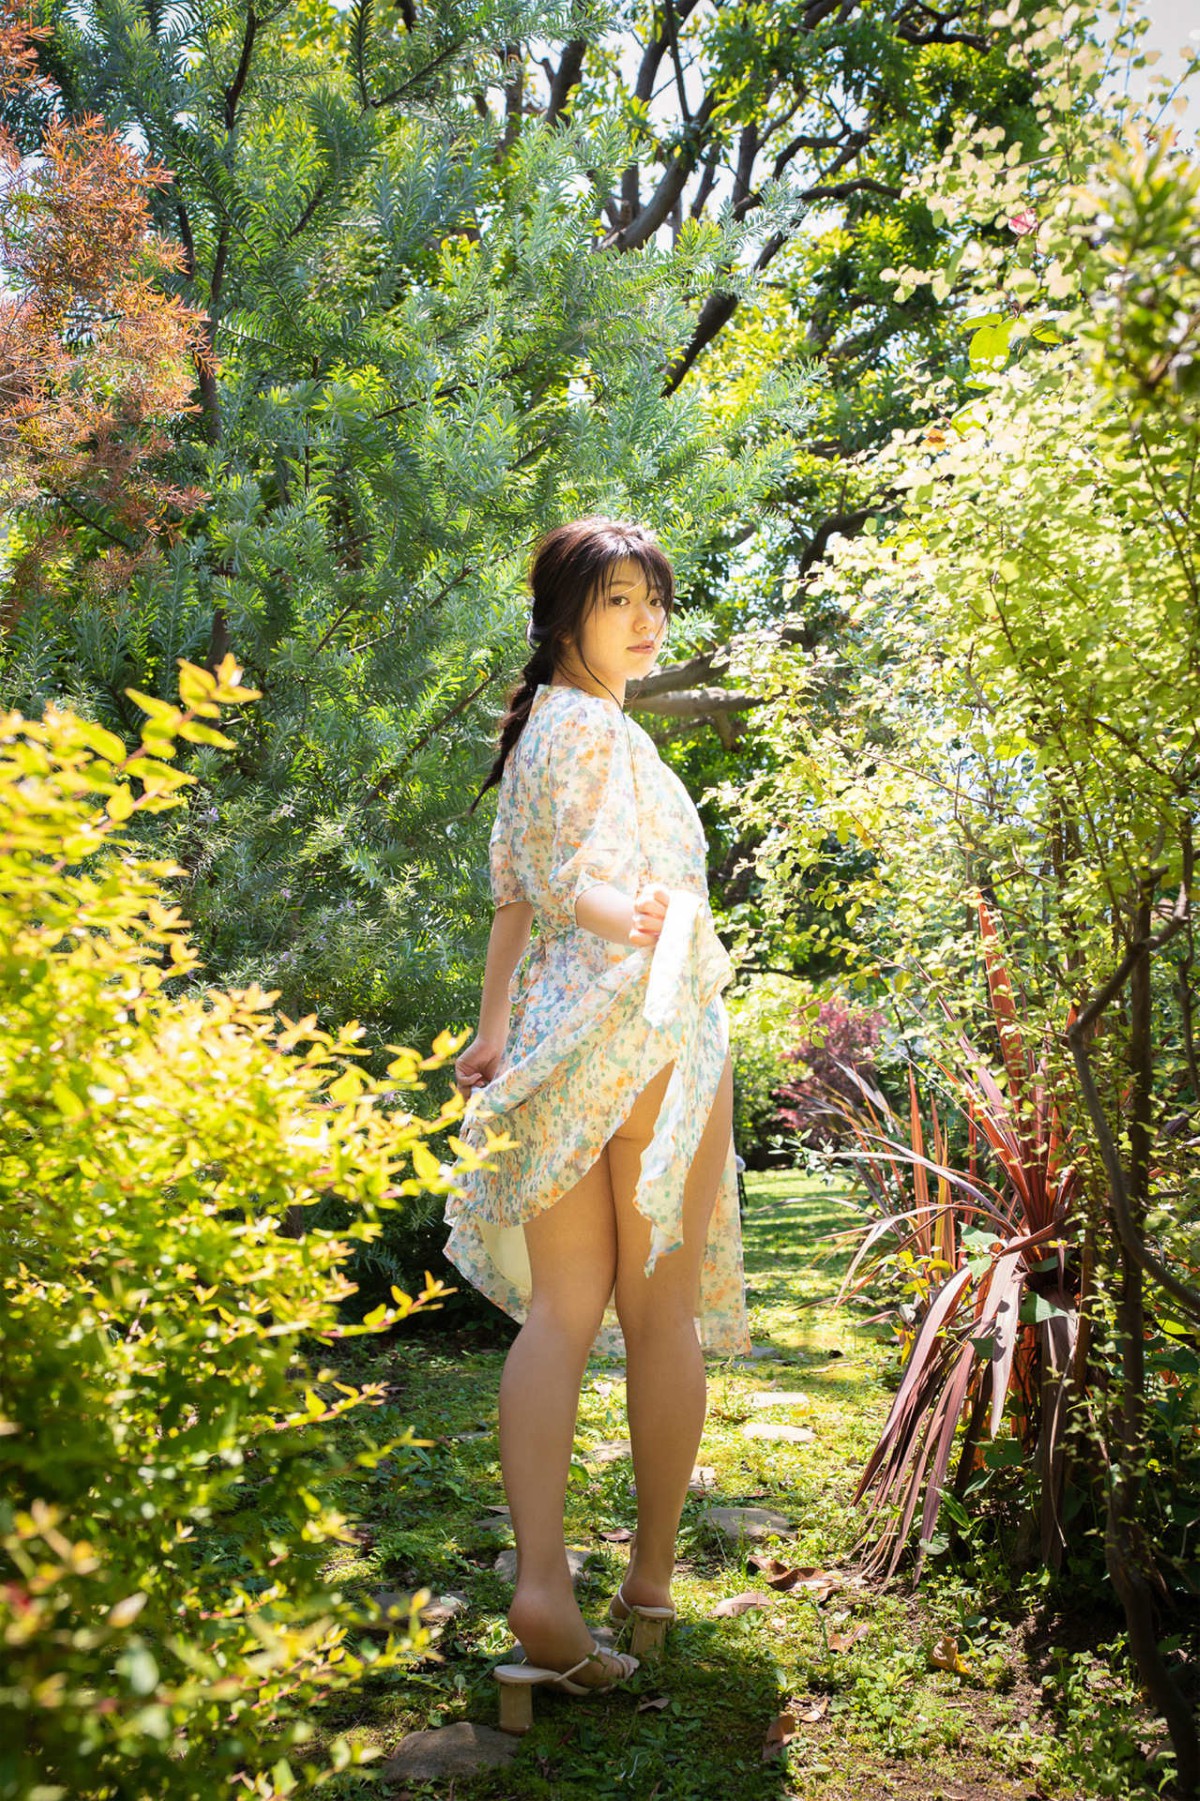 Weekly Gendai Photobook Yamada Kana 山田かな KANA Sensual White No Watermark 0064 2264135405.jpg